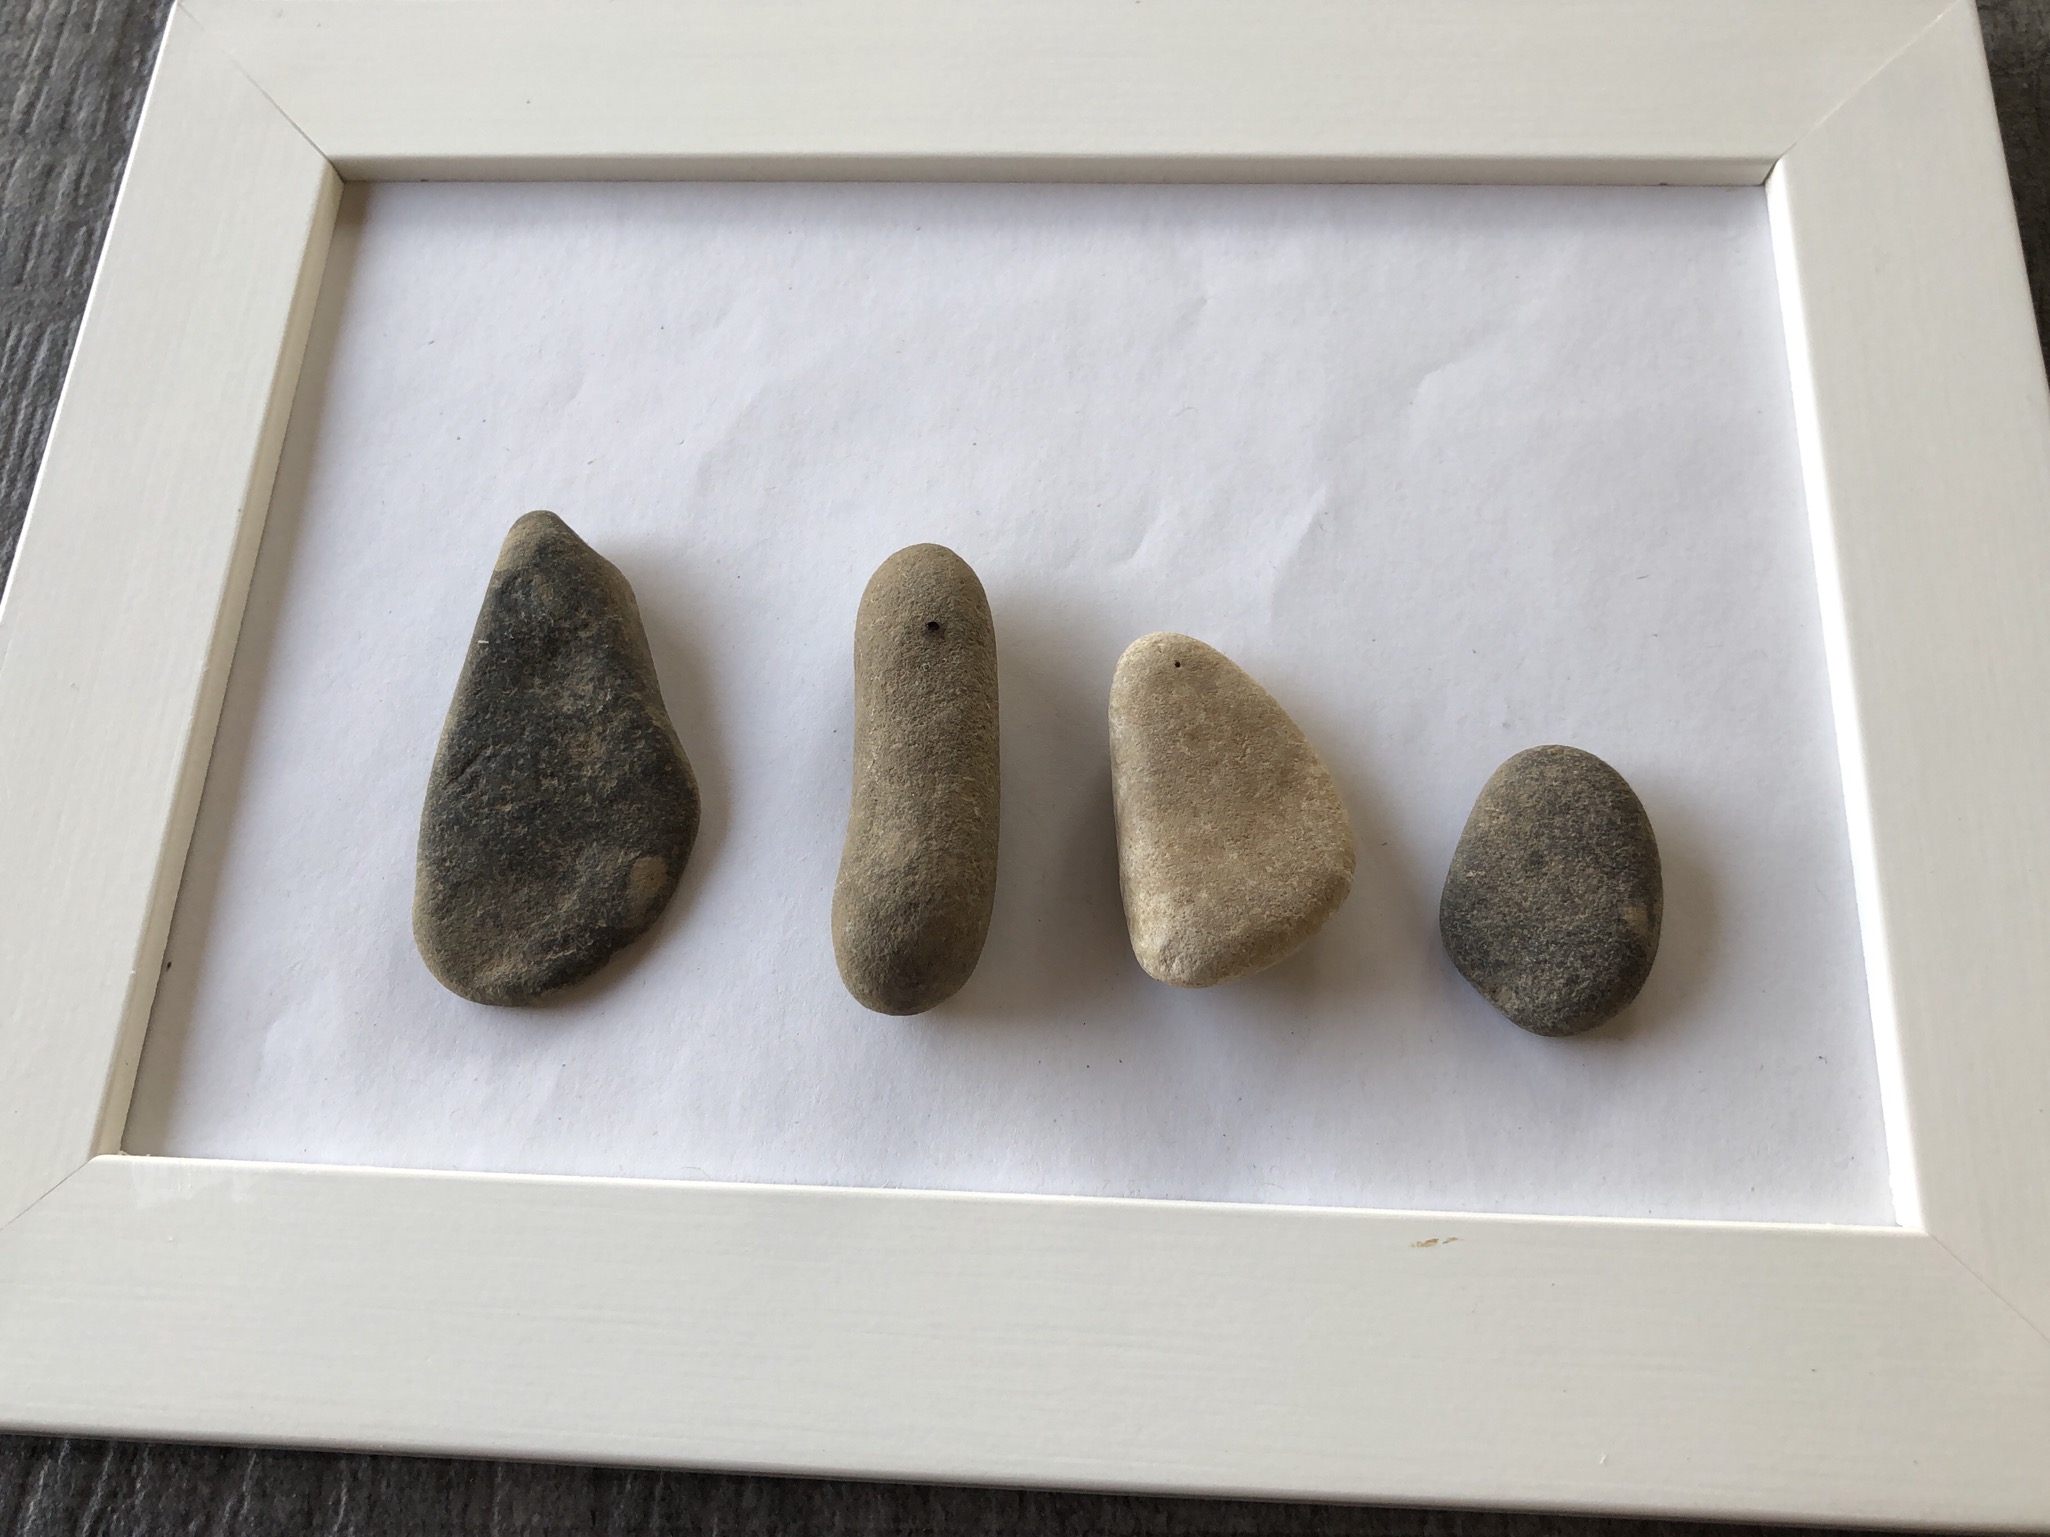 Bild zum Schritt 2 für die Kinder-Beschäftigung: 'Wählt Steine aus, die ihr verwenden wollt. Zum Beispiel für...'